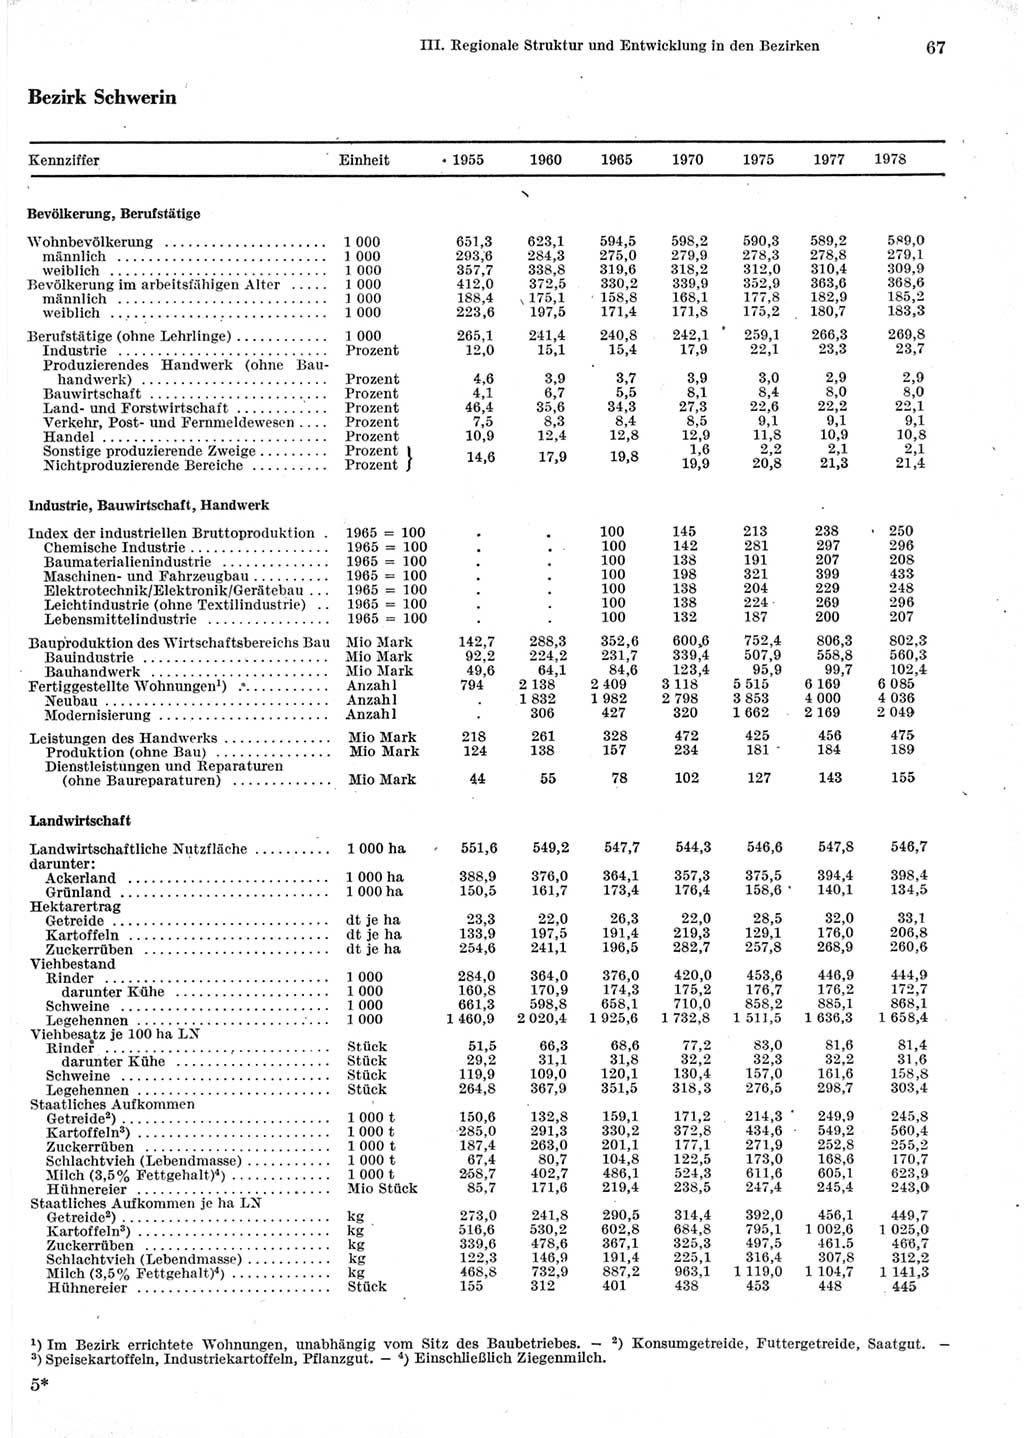 Statistisches Jahrbuch der Deutschen Demokratischen Republik (DDR) 1979, Seite 67 (Stat. Jb. DDR 1979, S. 67)